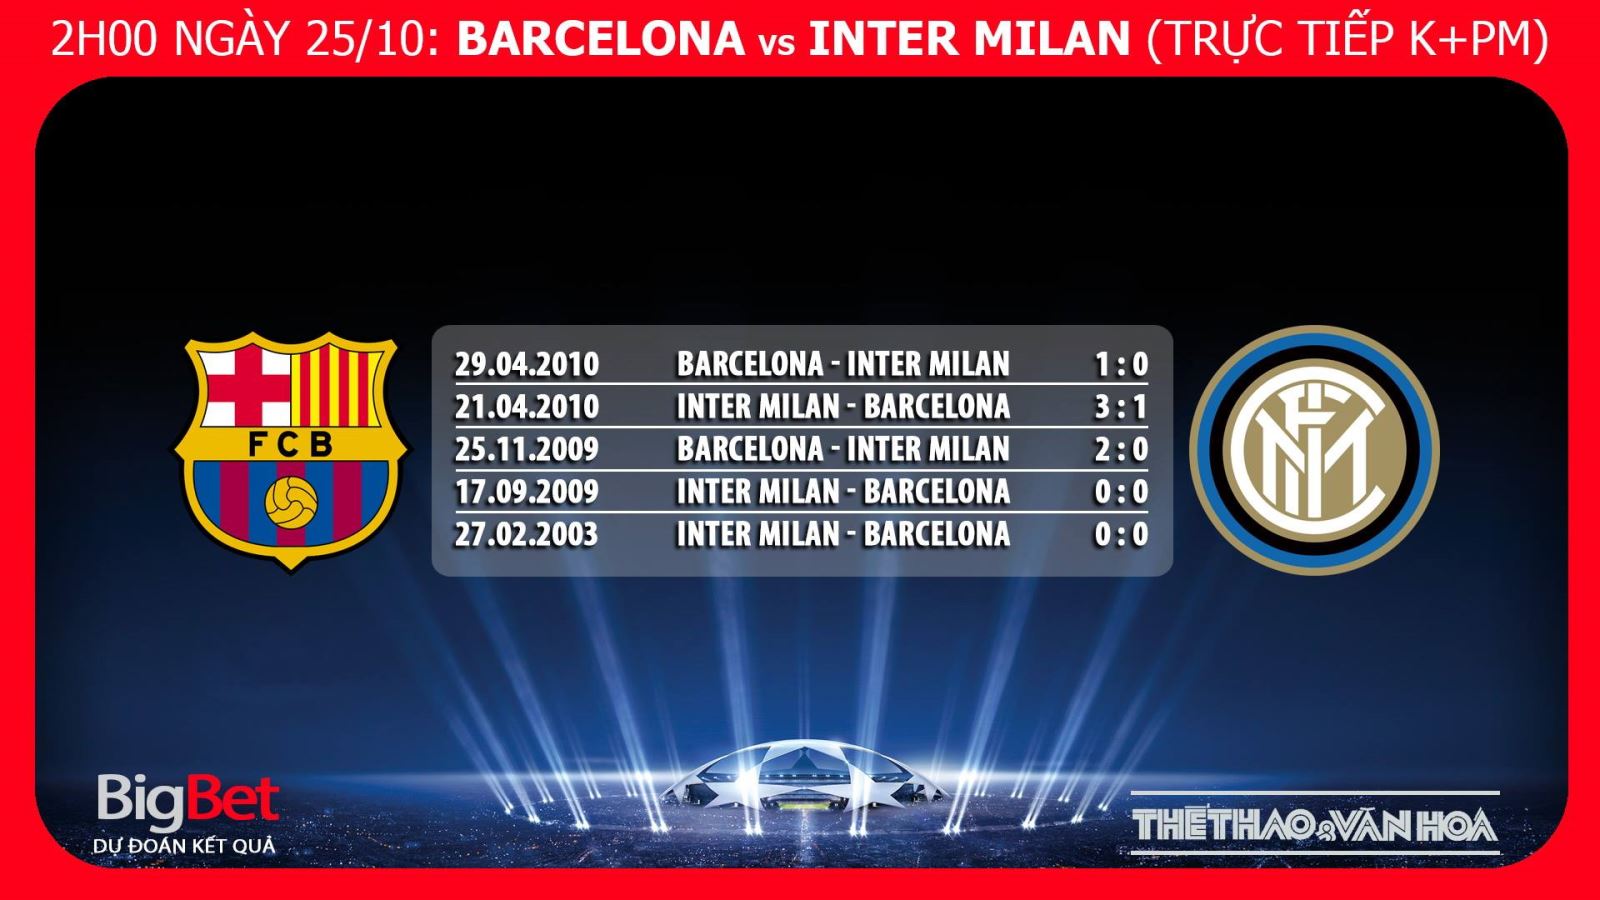 Barca vs Inter, Barcelona vs Inter Milan, kèo Barca vs Inter Milan, nhận định bóng đá Barca vs Inter, kèo Barcelona, nhận định Barca vs Inter, dự đoán bóng đá, trực tiếp bóng đá